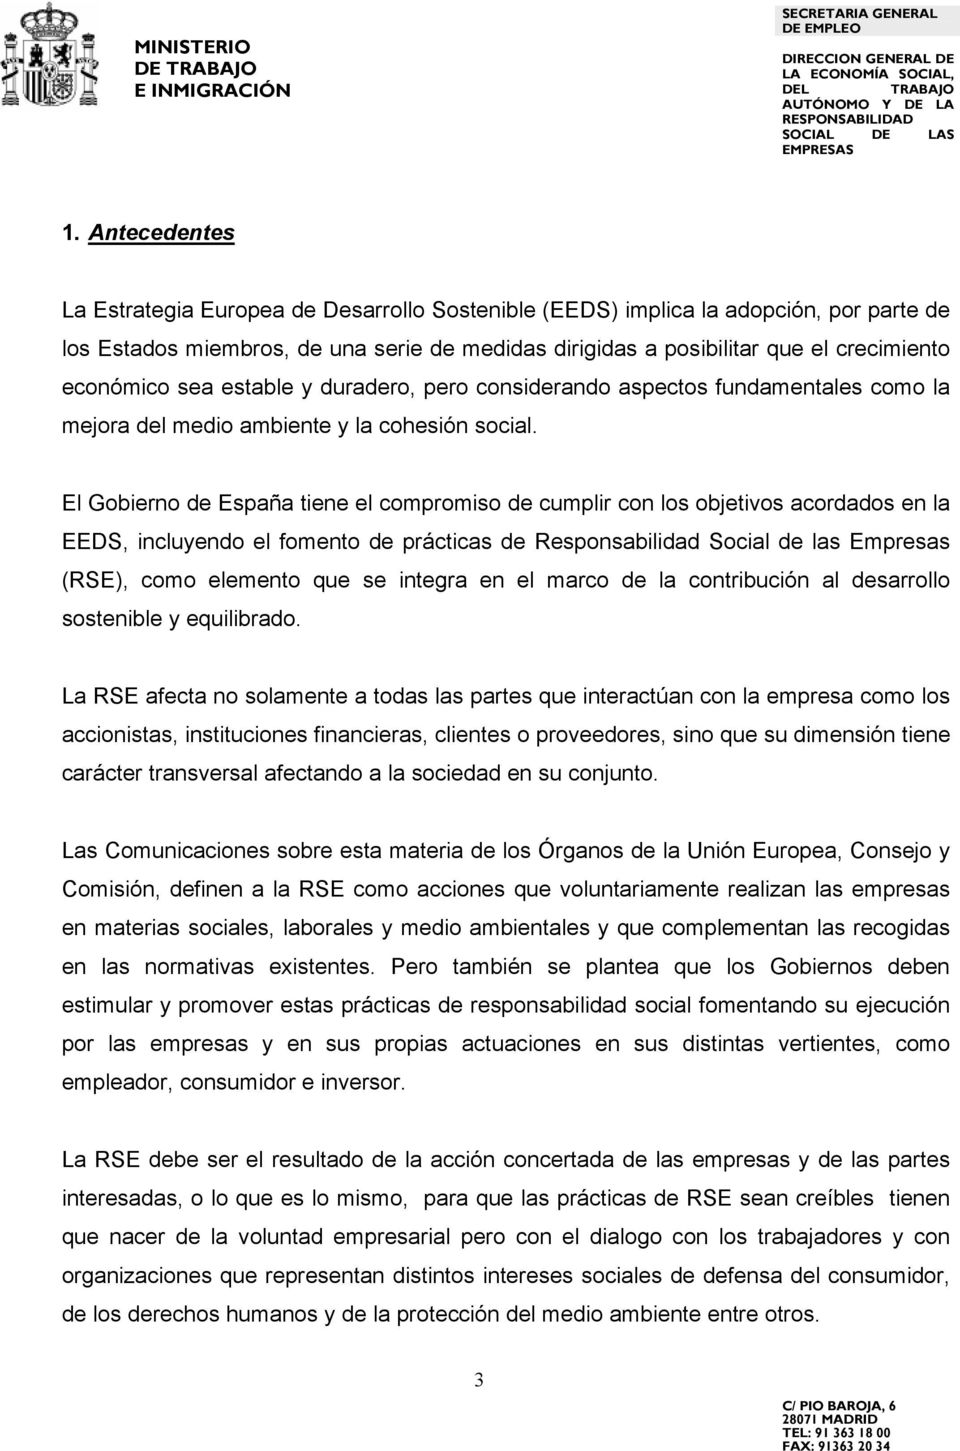 El Gobierno de España tiene el compromiso de cumplir con los objetivos acordados en la EEDS, incluyendo el fomento de prácticas de Responsabilidad Social de las Empresas (RSE), como elemento que se